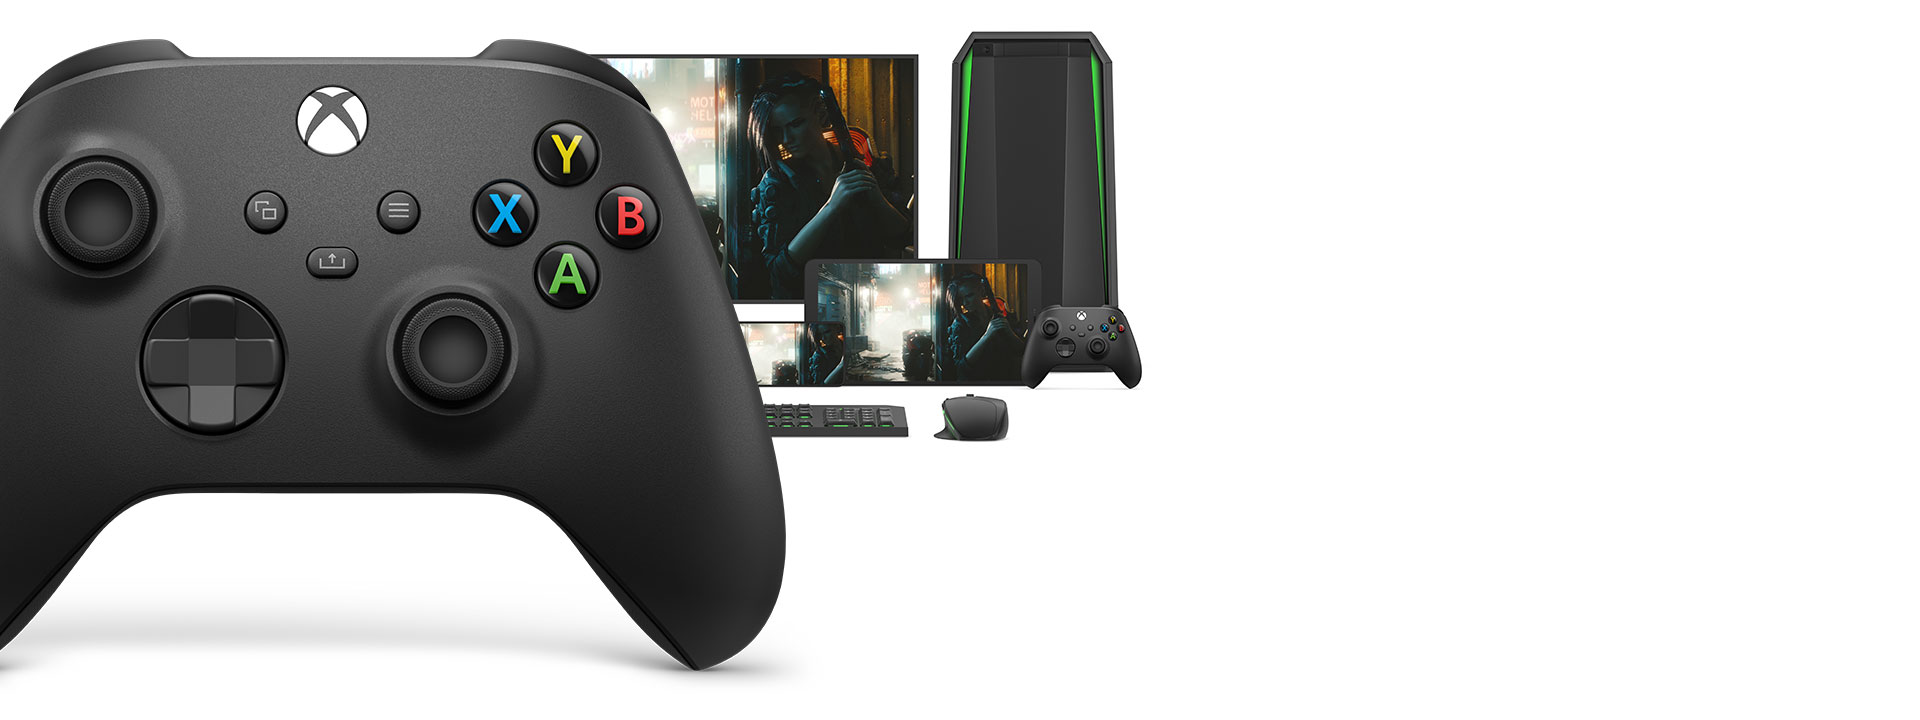 Tay Cầm Chơi Game Xbox Series X Controller - Carbon Black Màu Đen + USB Adapter Không Dây 5